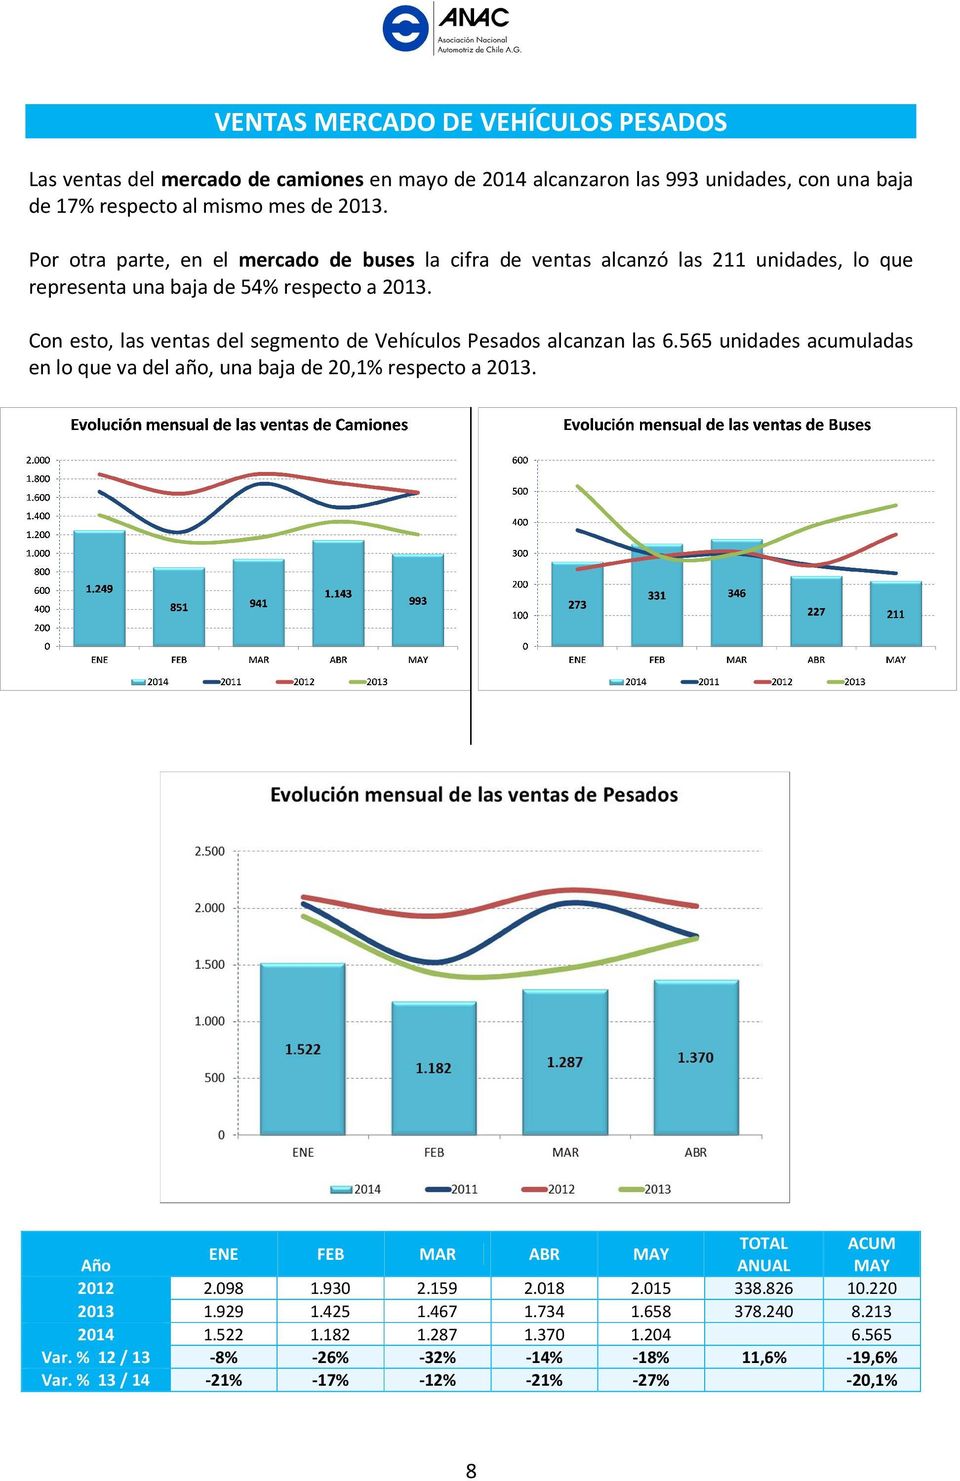 Con esto, las ventas del segmento de Vehículos Pesados alcanzan las 6.565 unidades acumuladas en lo que va del año, una baja de 20,1% respecto a 2013.